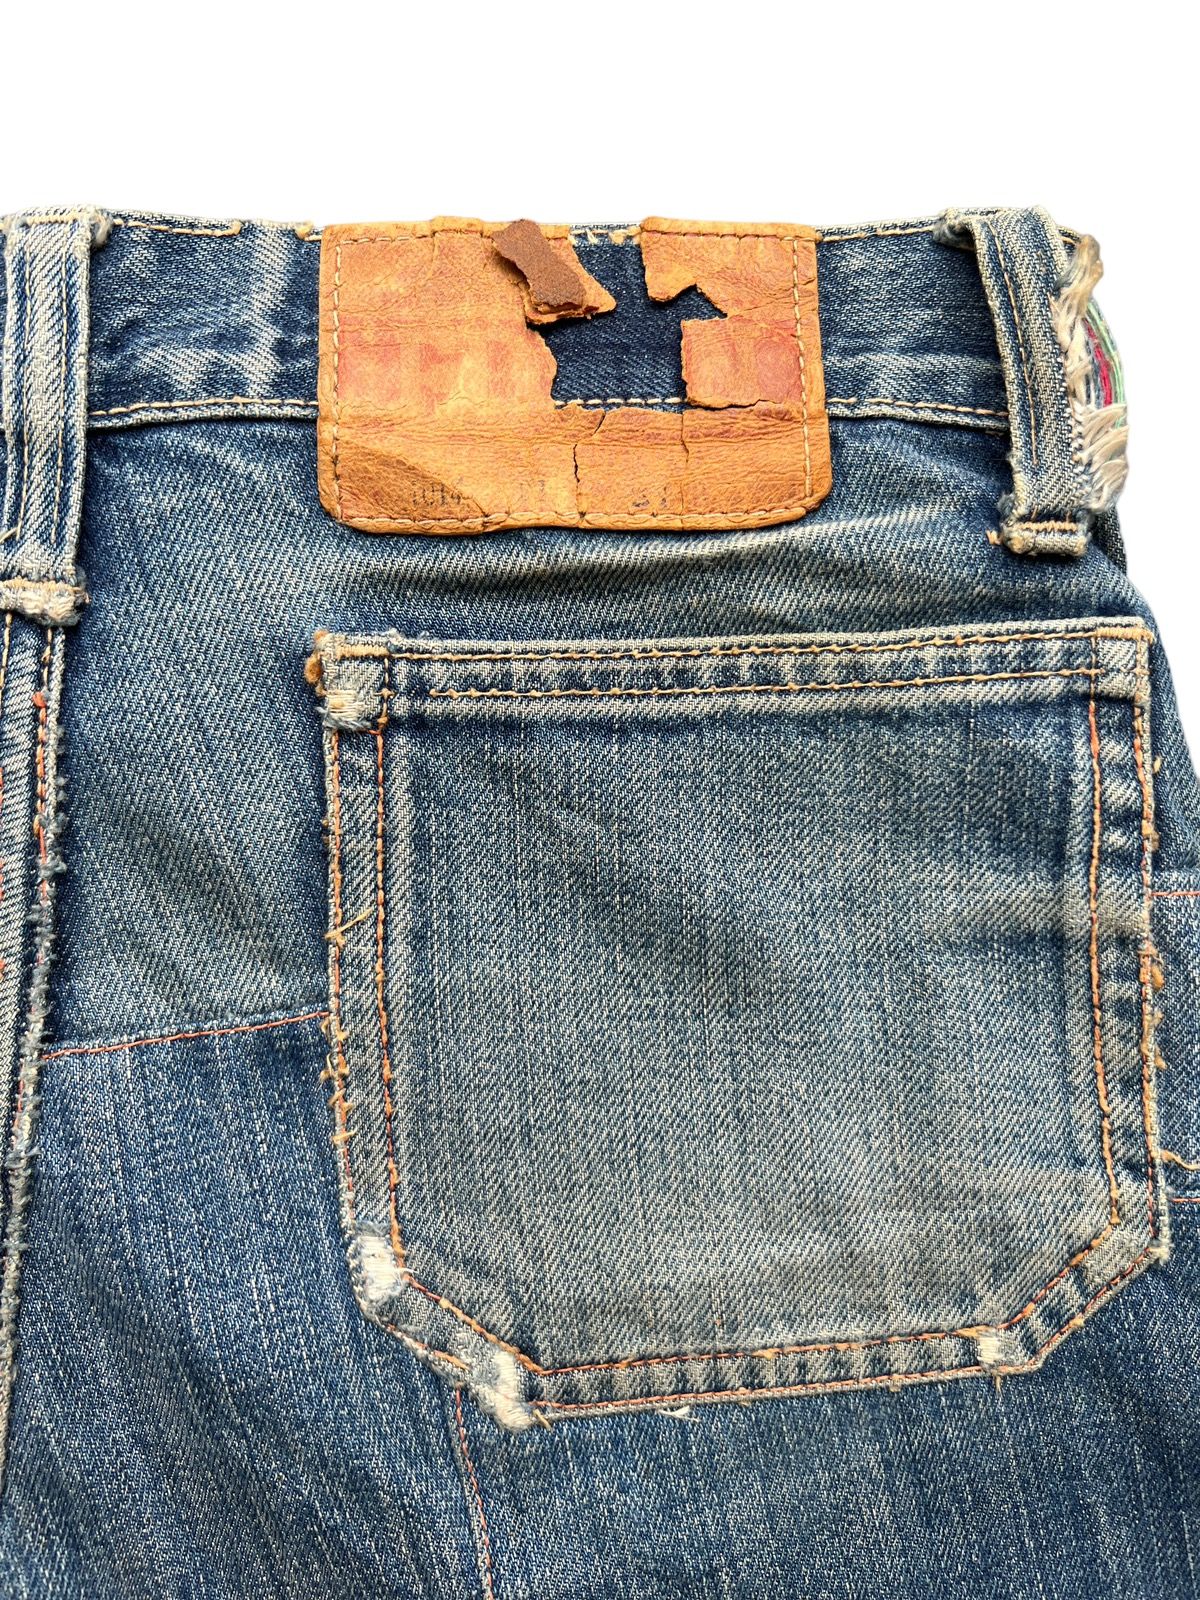 Hype - Vintage 80s Edwin Bushpant Patchwork Distressed Flare Jeans - 11